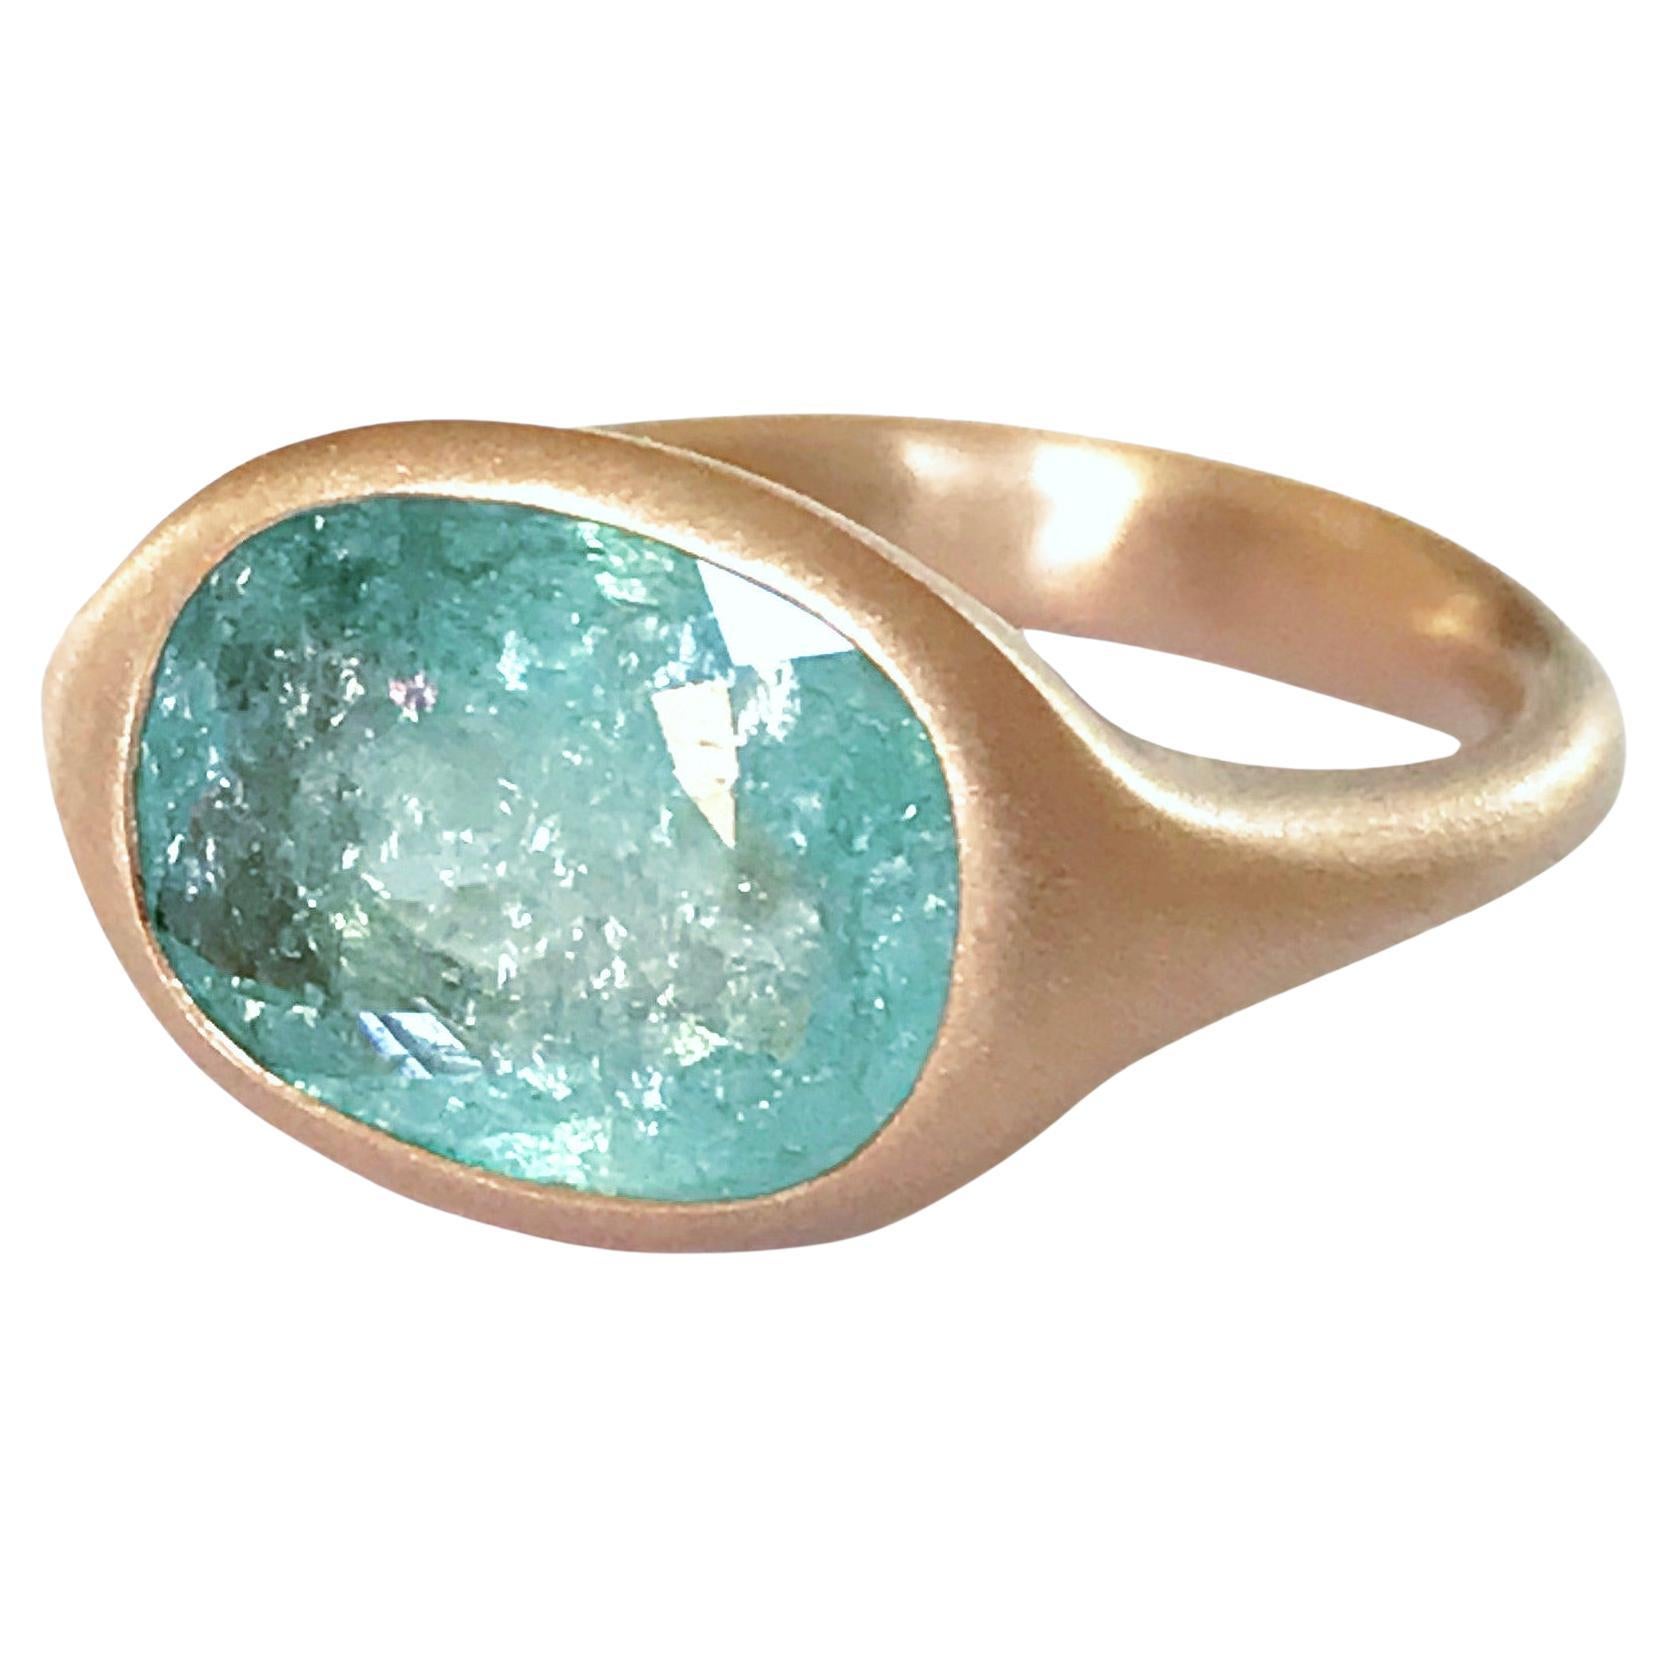 Dalben Design 3.79 carat Paraiba Tourmaline Rose Gold Ring